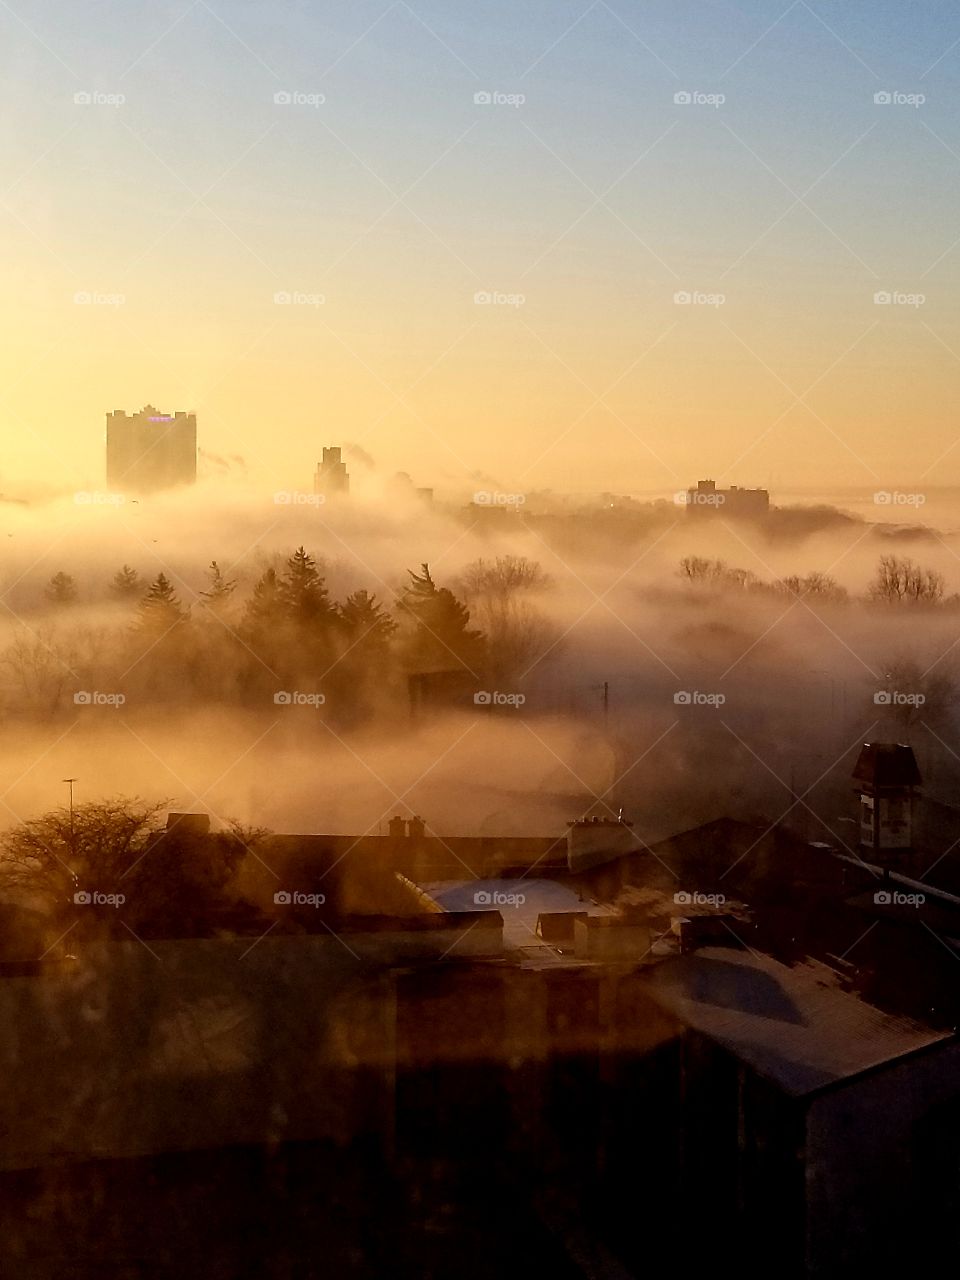 Niagara falls foggy morning